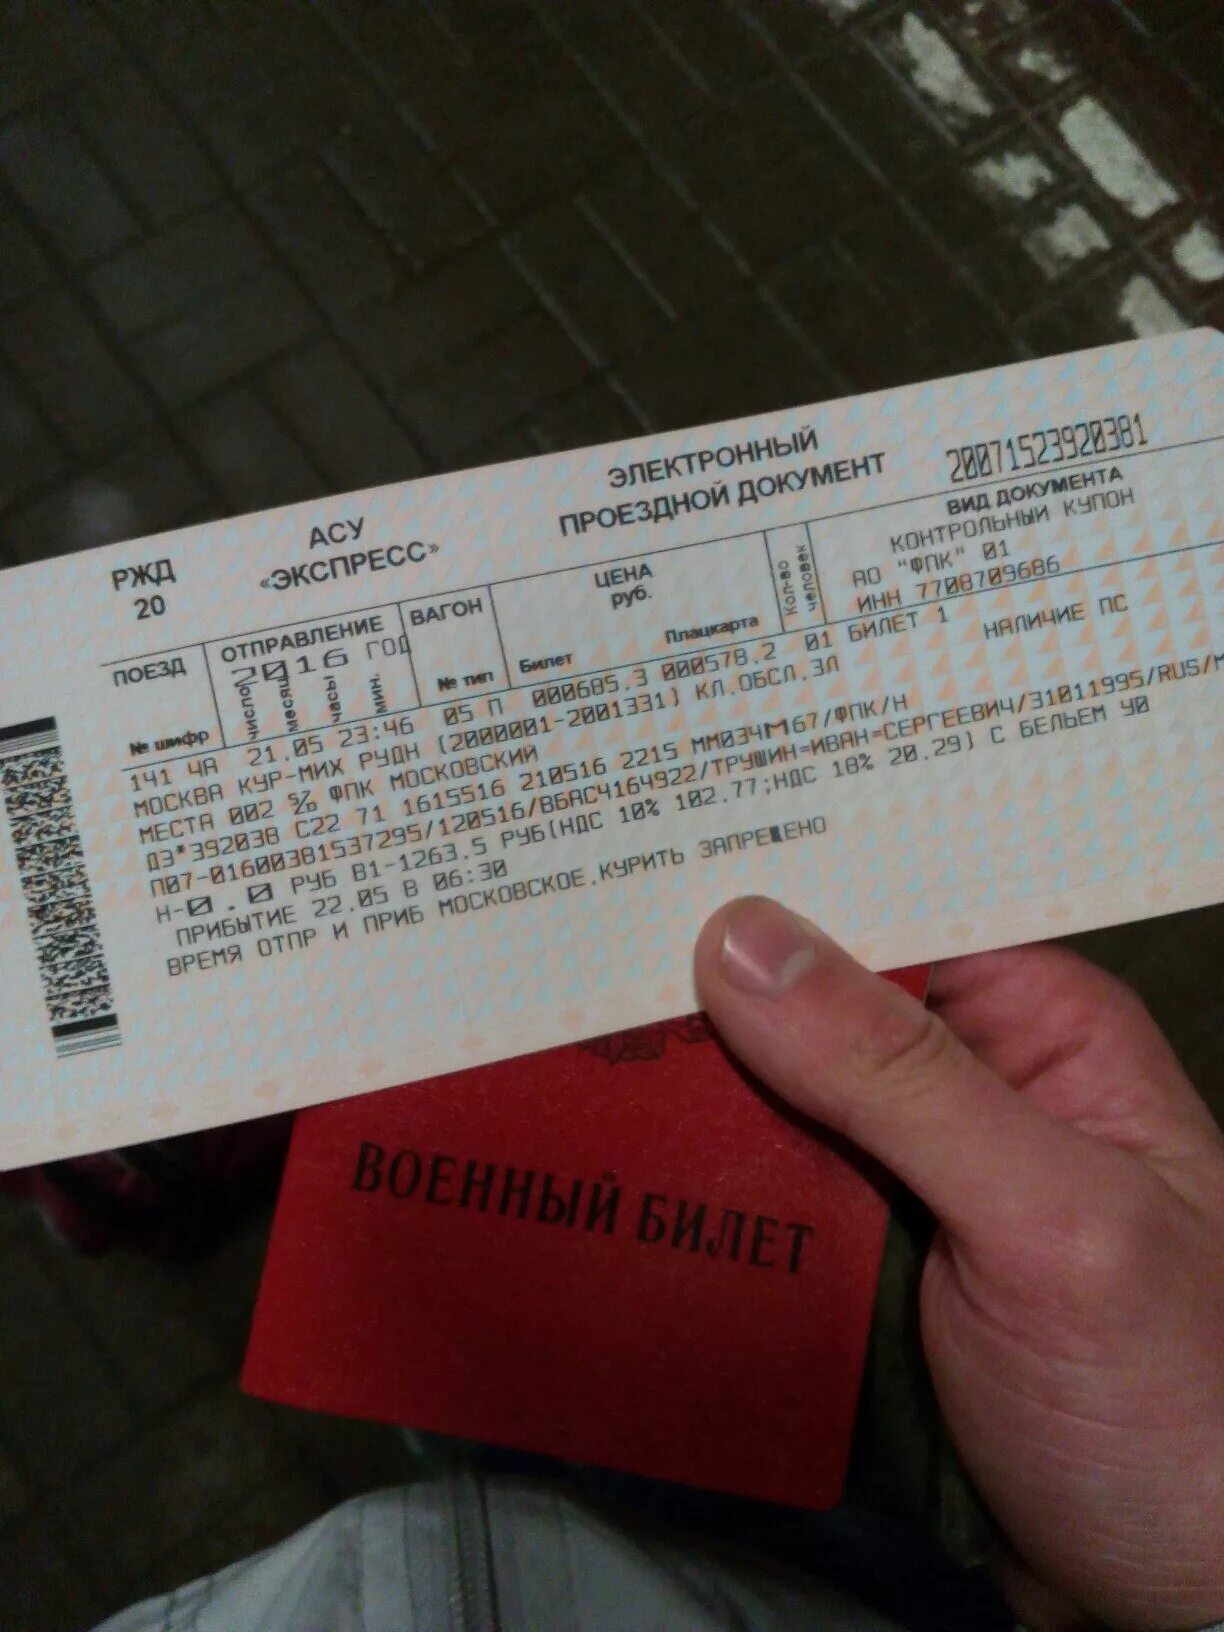 Билеты ржд курган. Билет на поезд. Билеты РЖД. Билеты на поезд в руках. Фото билетов на поезд.